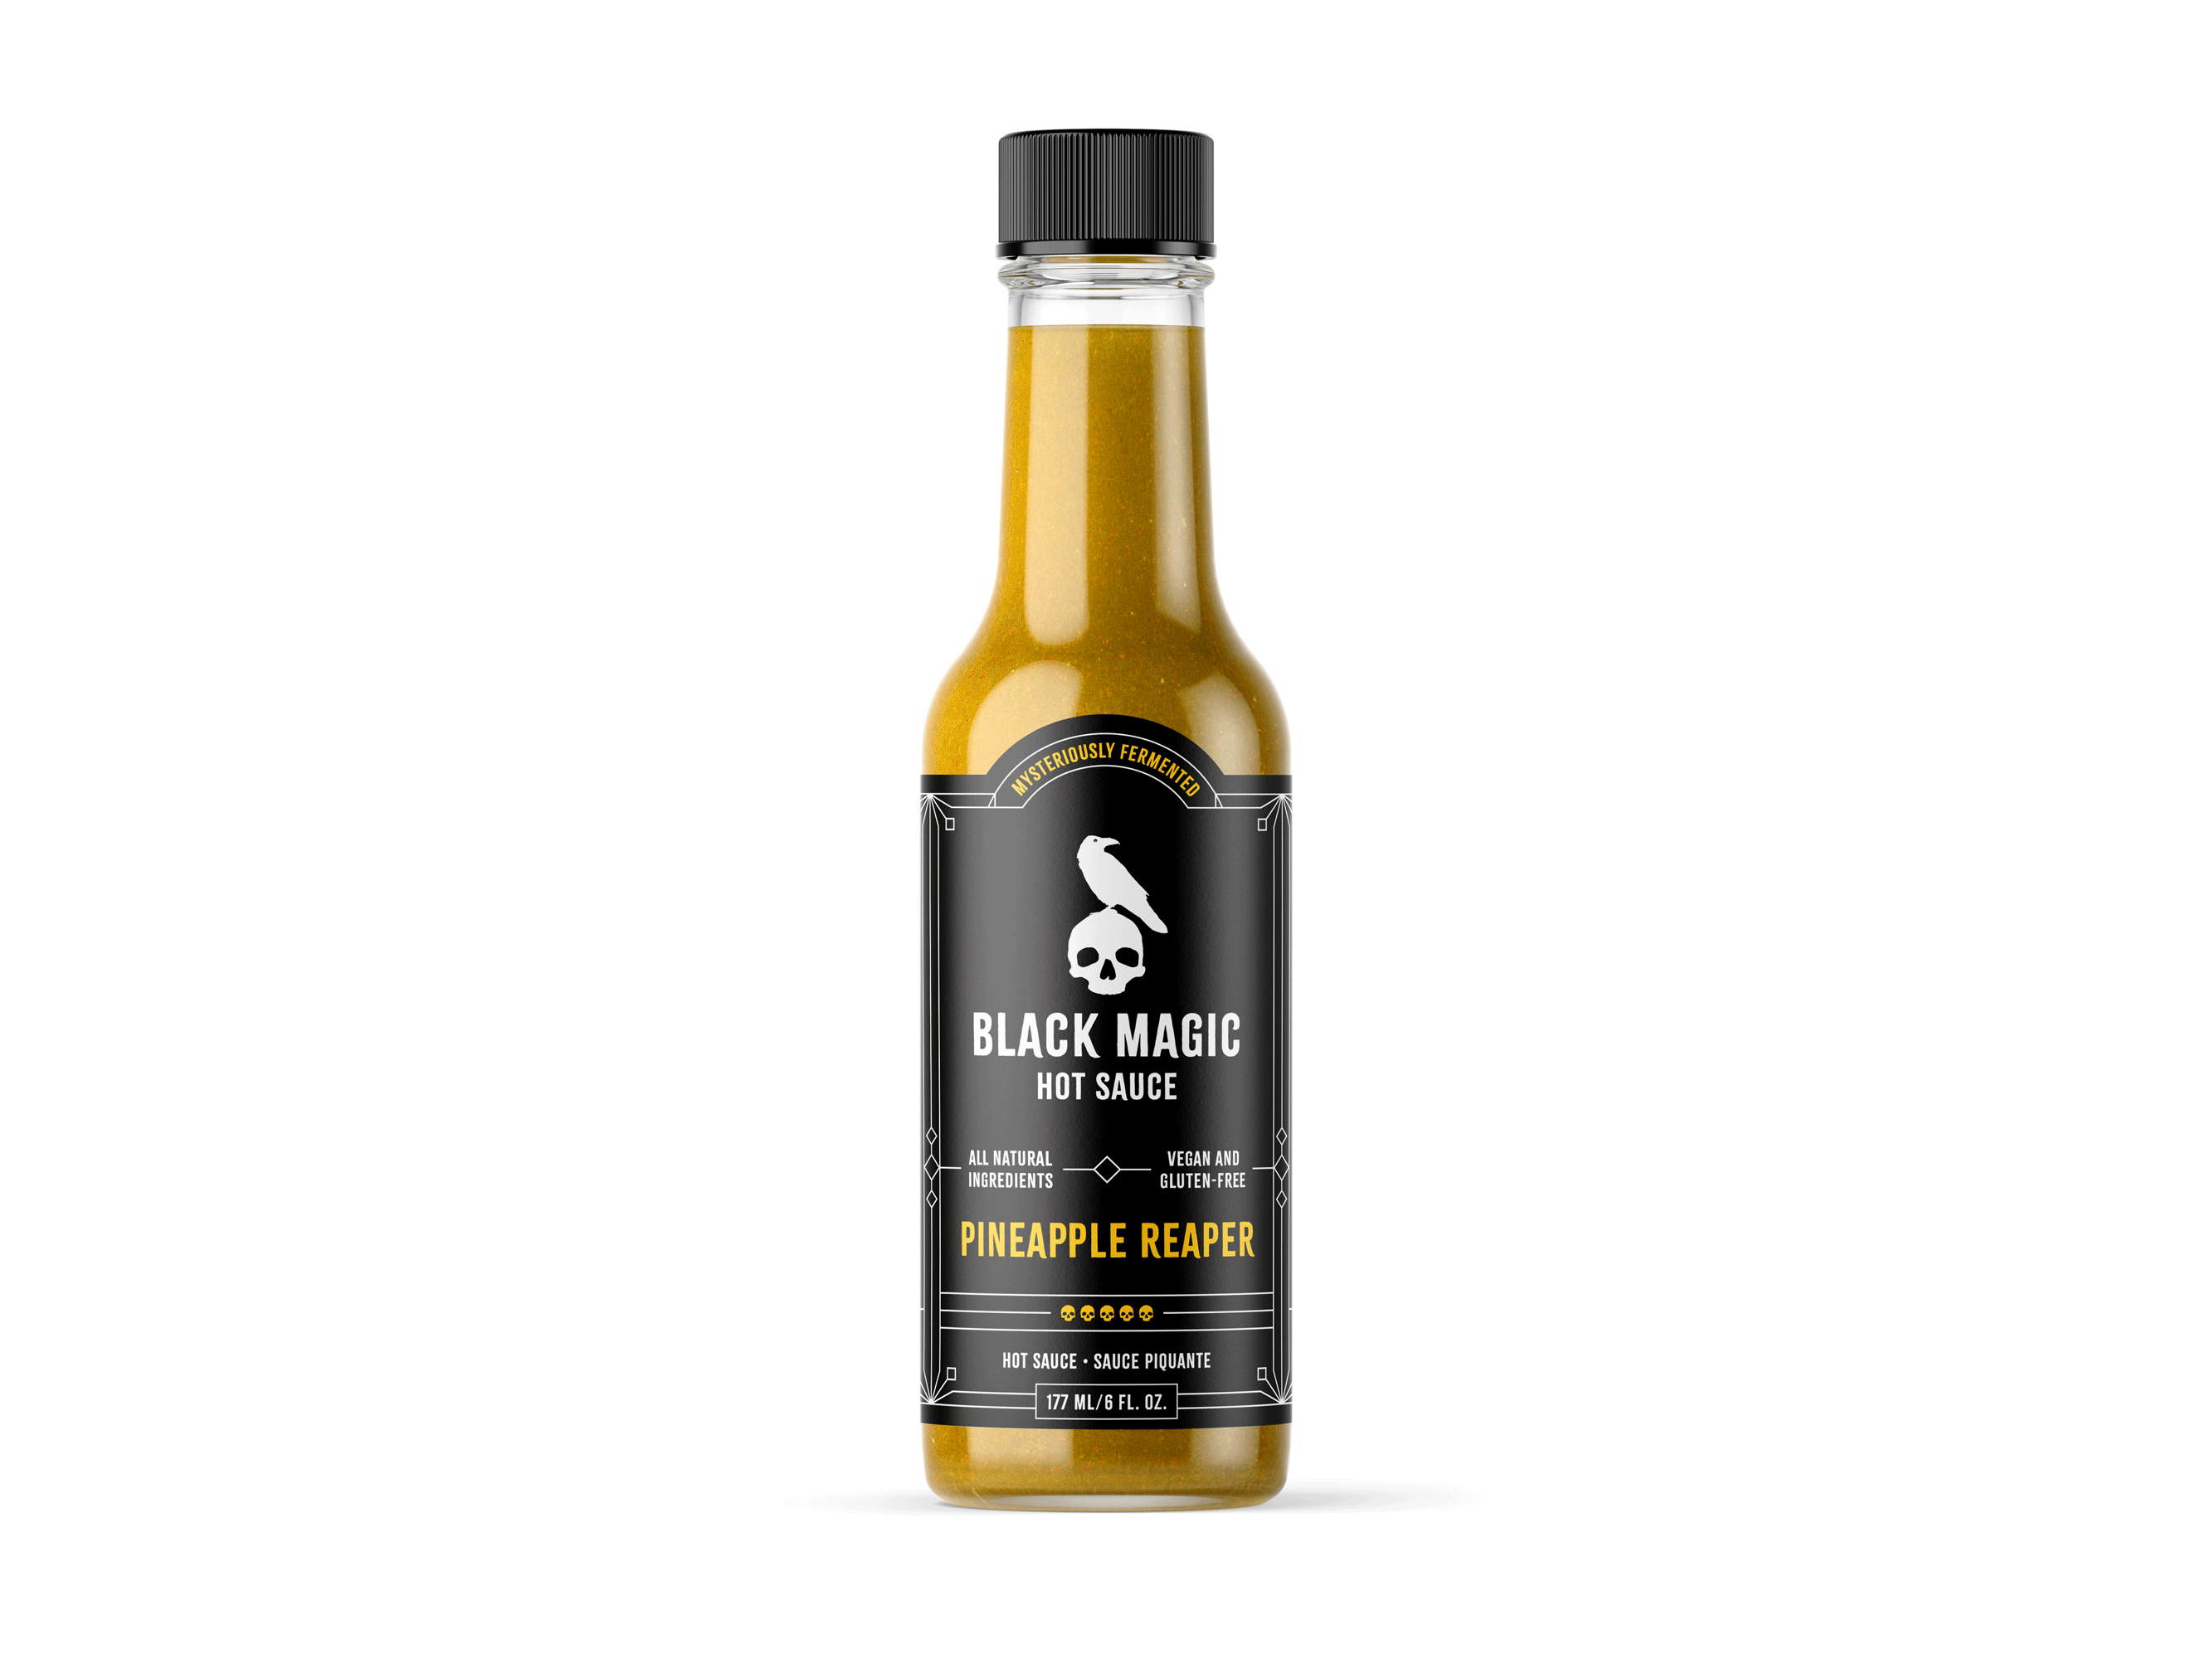 Black Magic Hot Sauce – Pineapple Reaper branding for sale goth hot sauce identity label logo packaging pineapple raven reaper skull